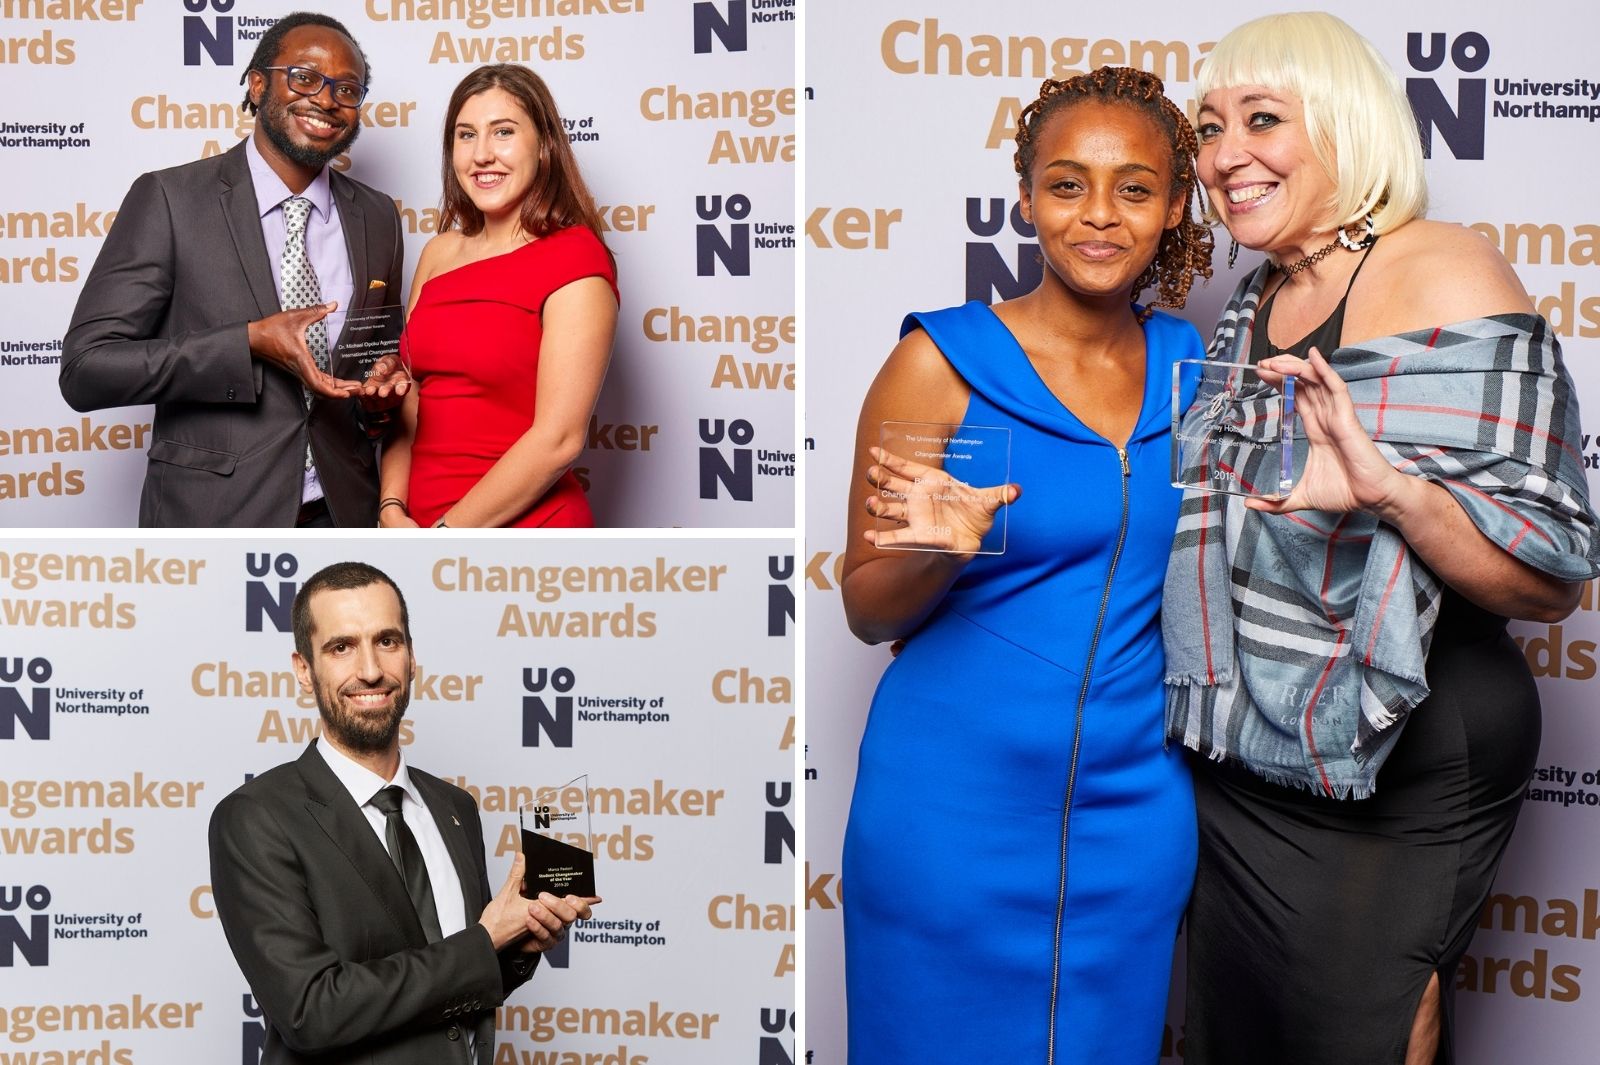 Changemaker Awards winners